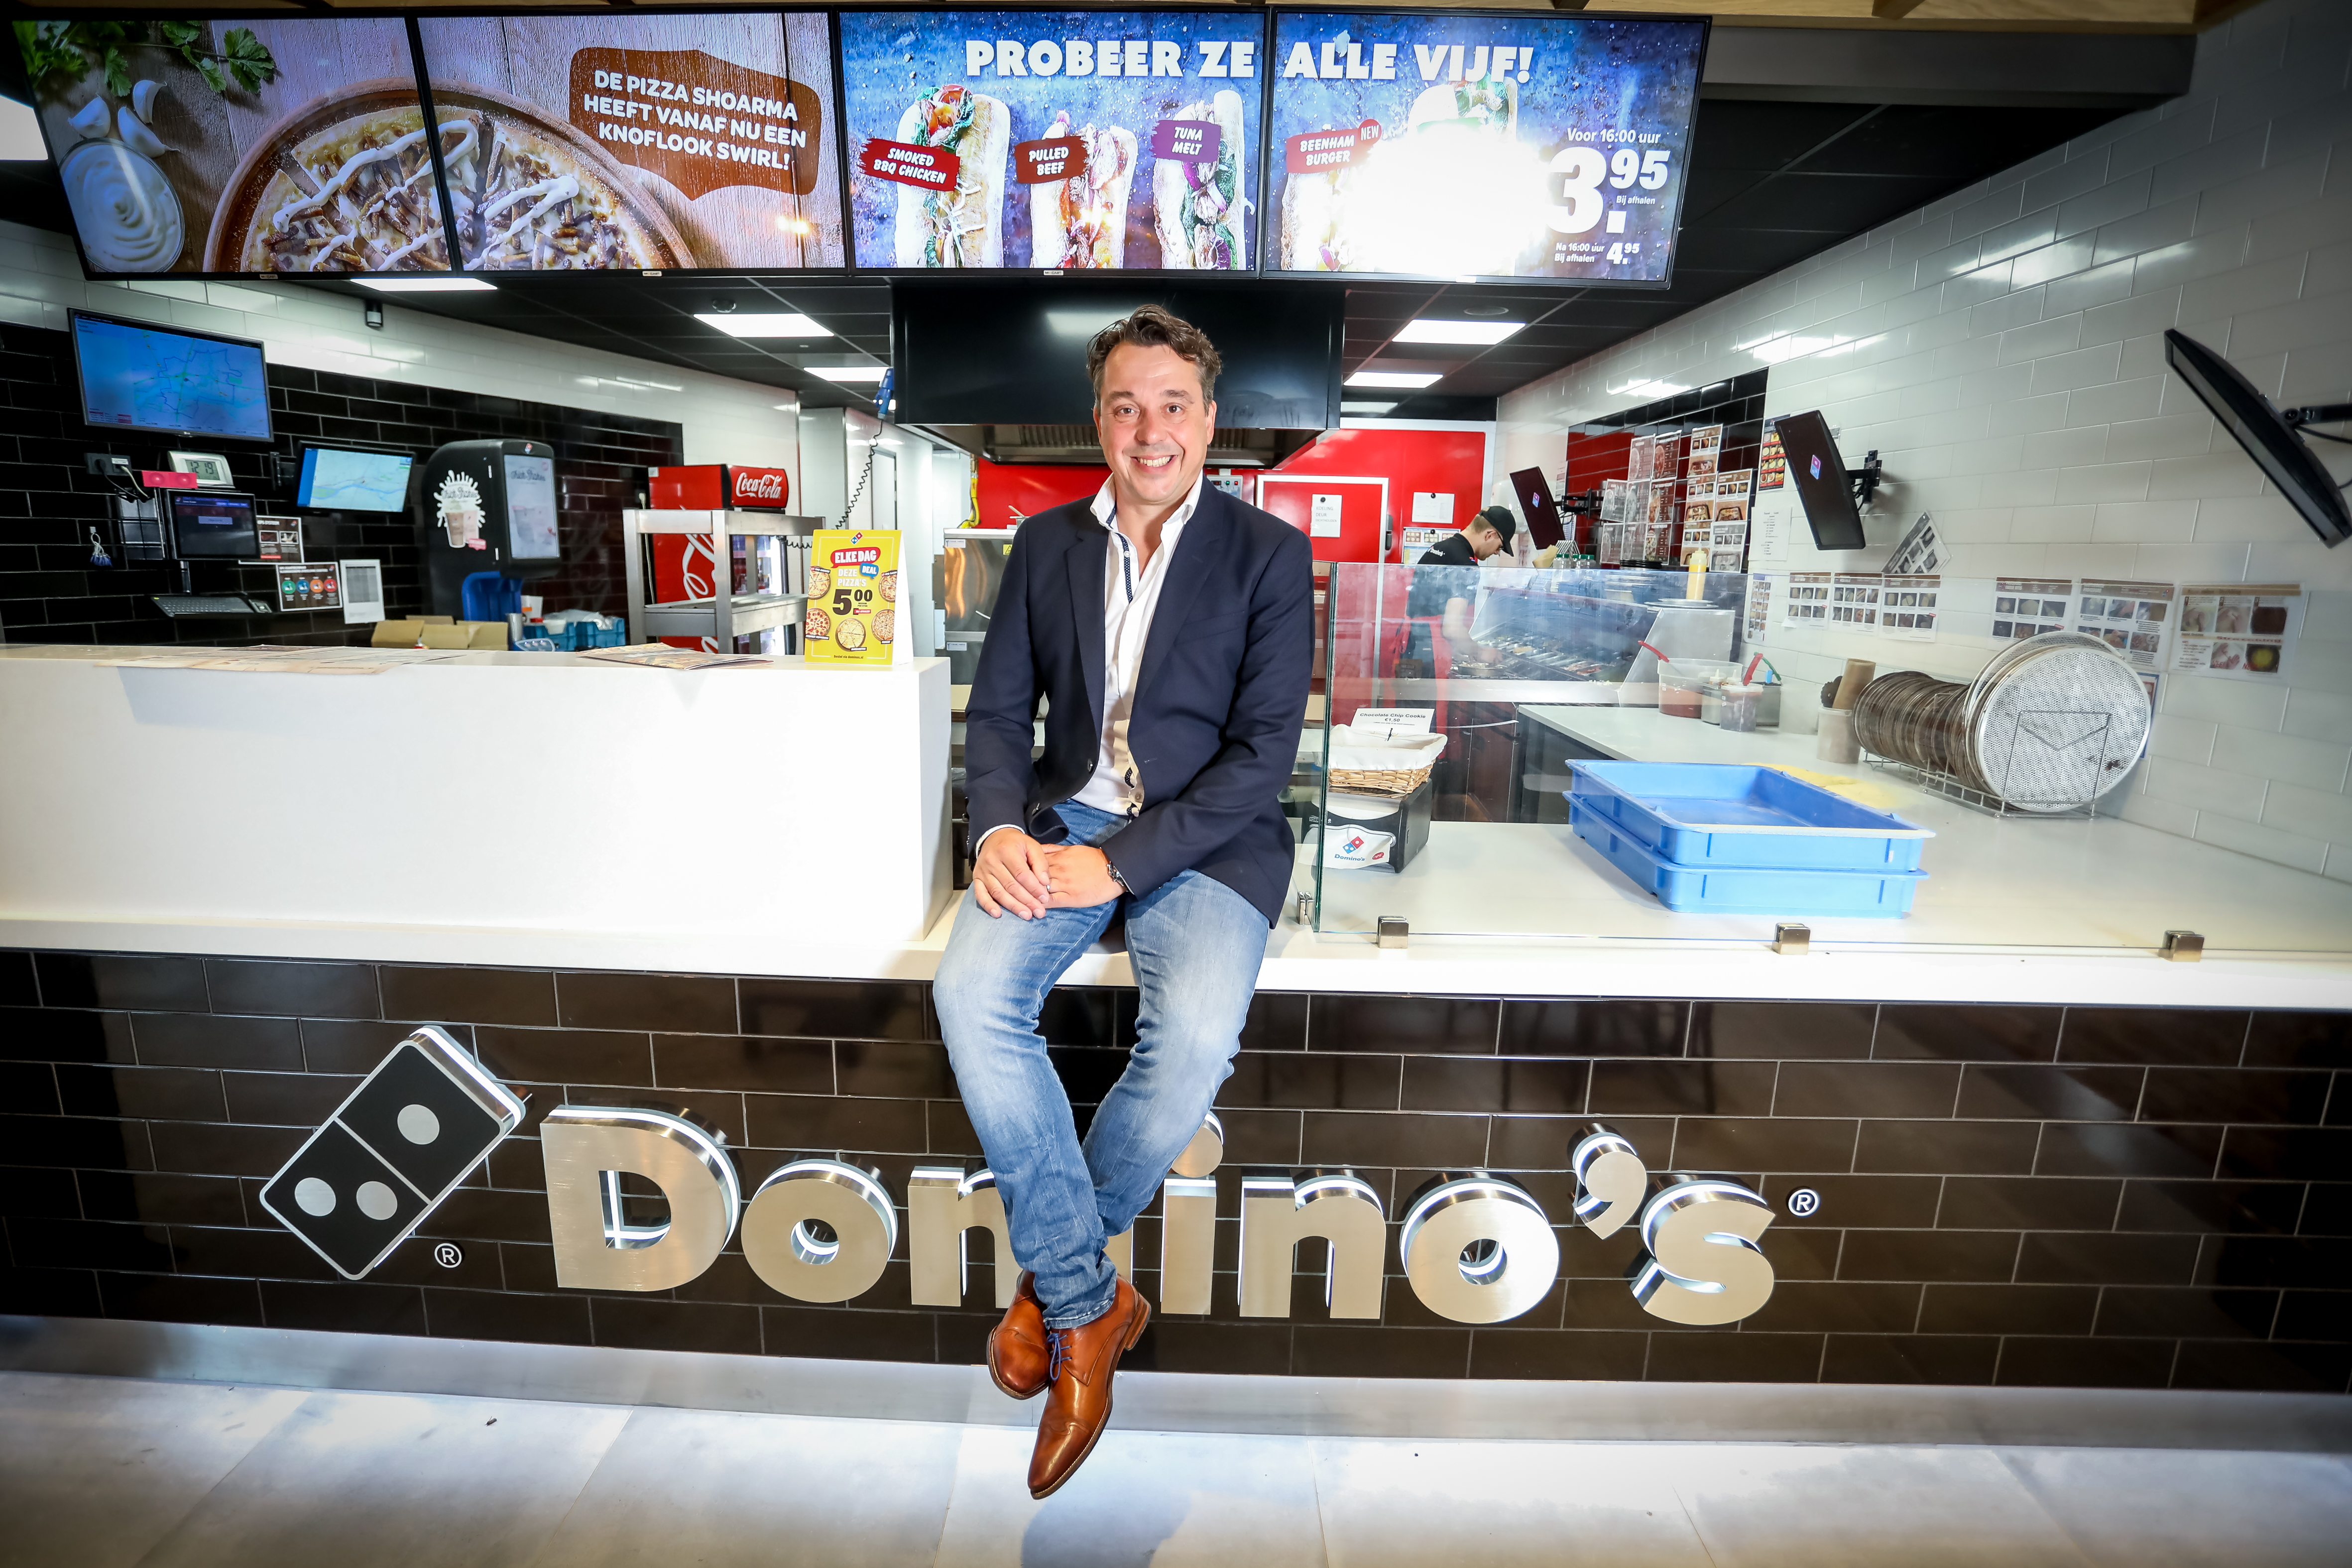 kalligrafie Rouwen Buik Domino's is grootste bezorg- en afhaalrestaurant van Nederland | Franchise  Plus